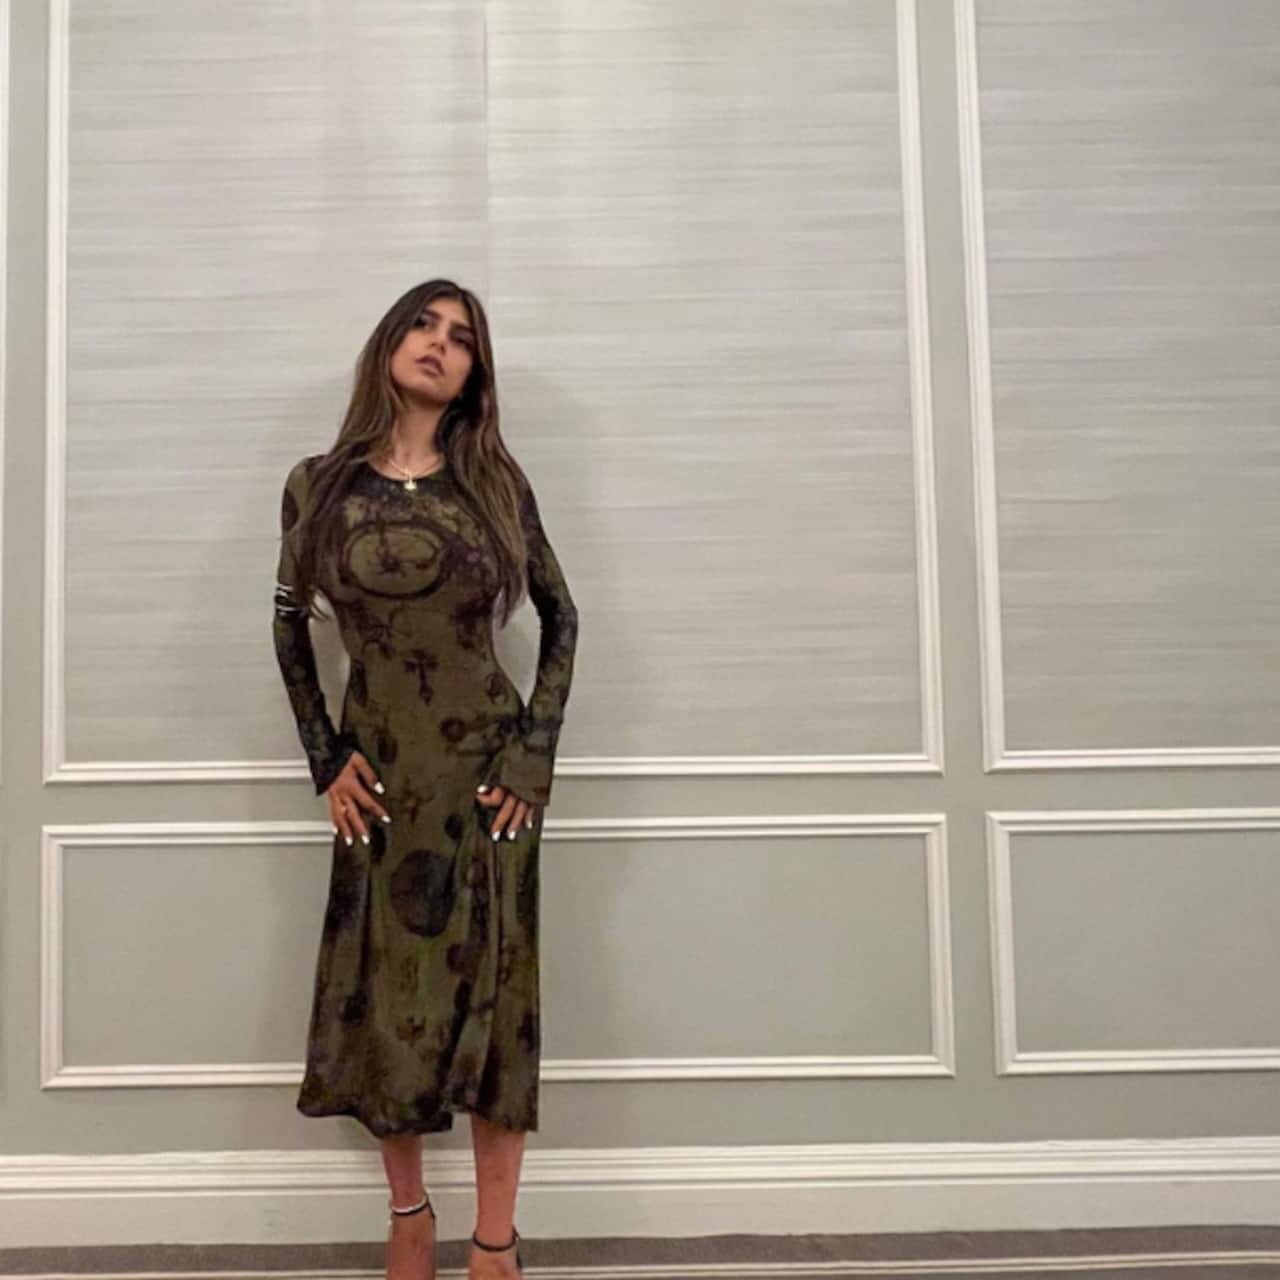 वन पीस ड्रेस में दिखी मिया खलीफा (Mia Khalifa)